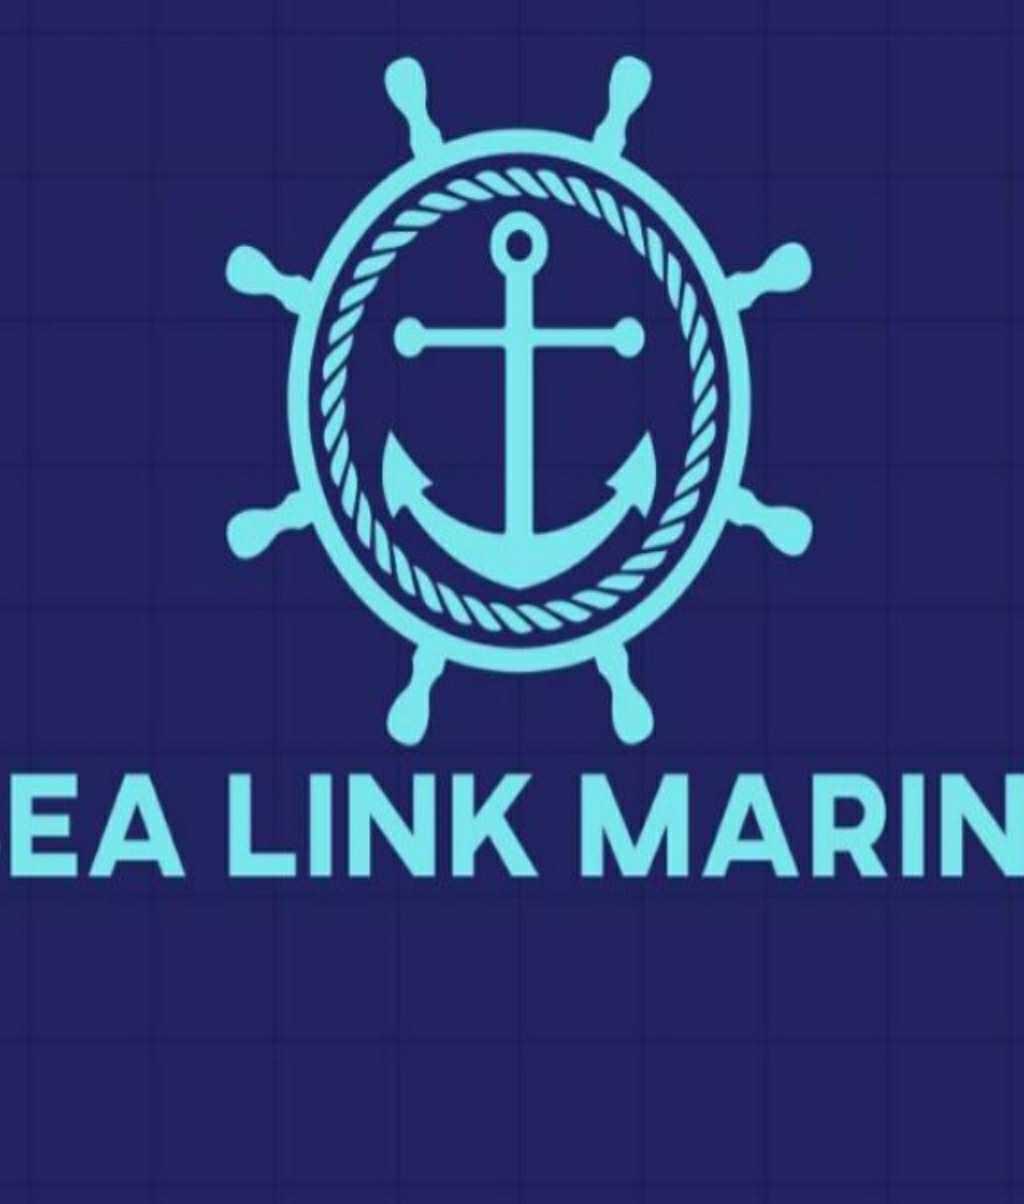 SEA LINK MARINE